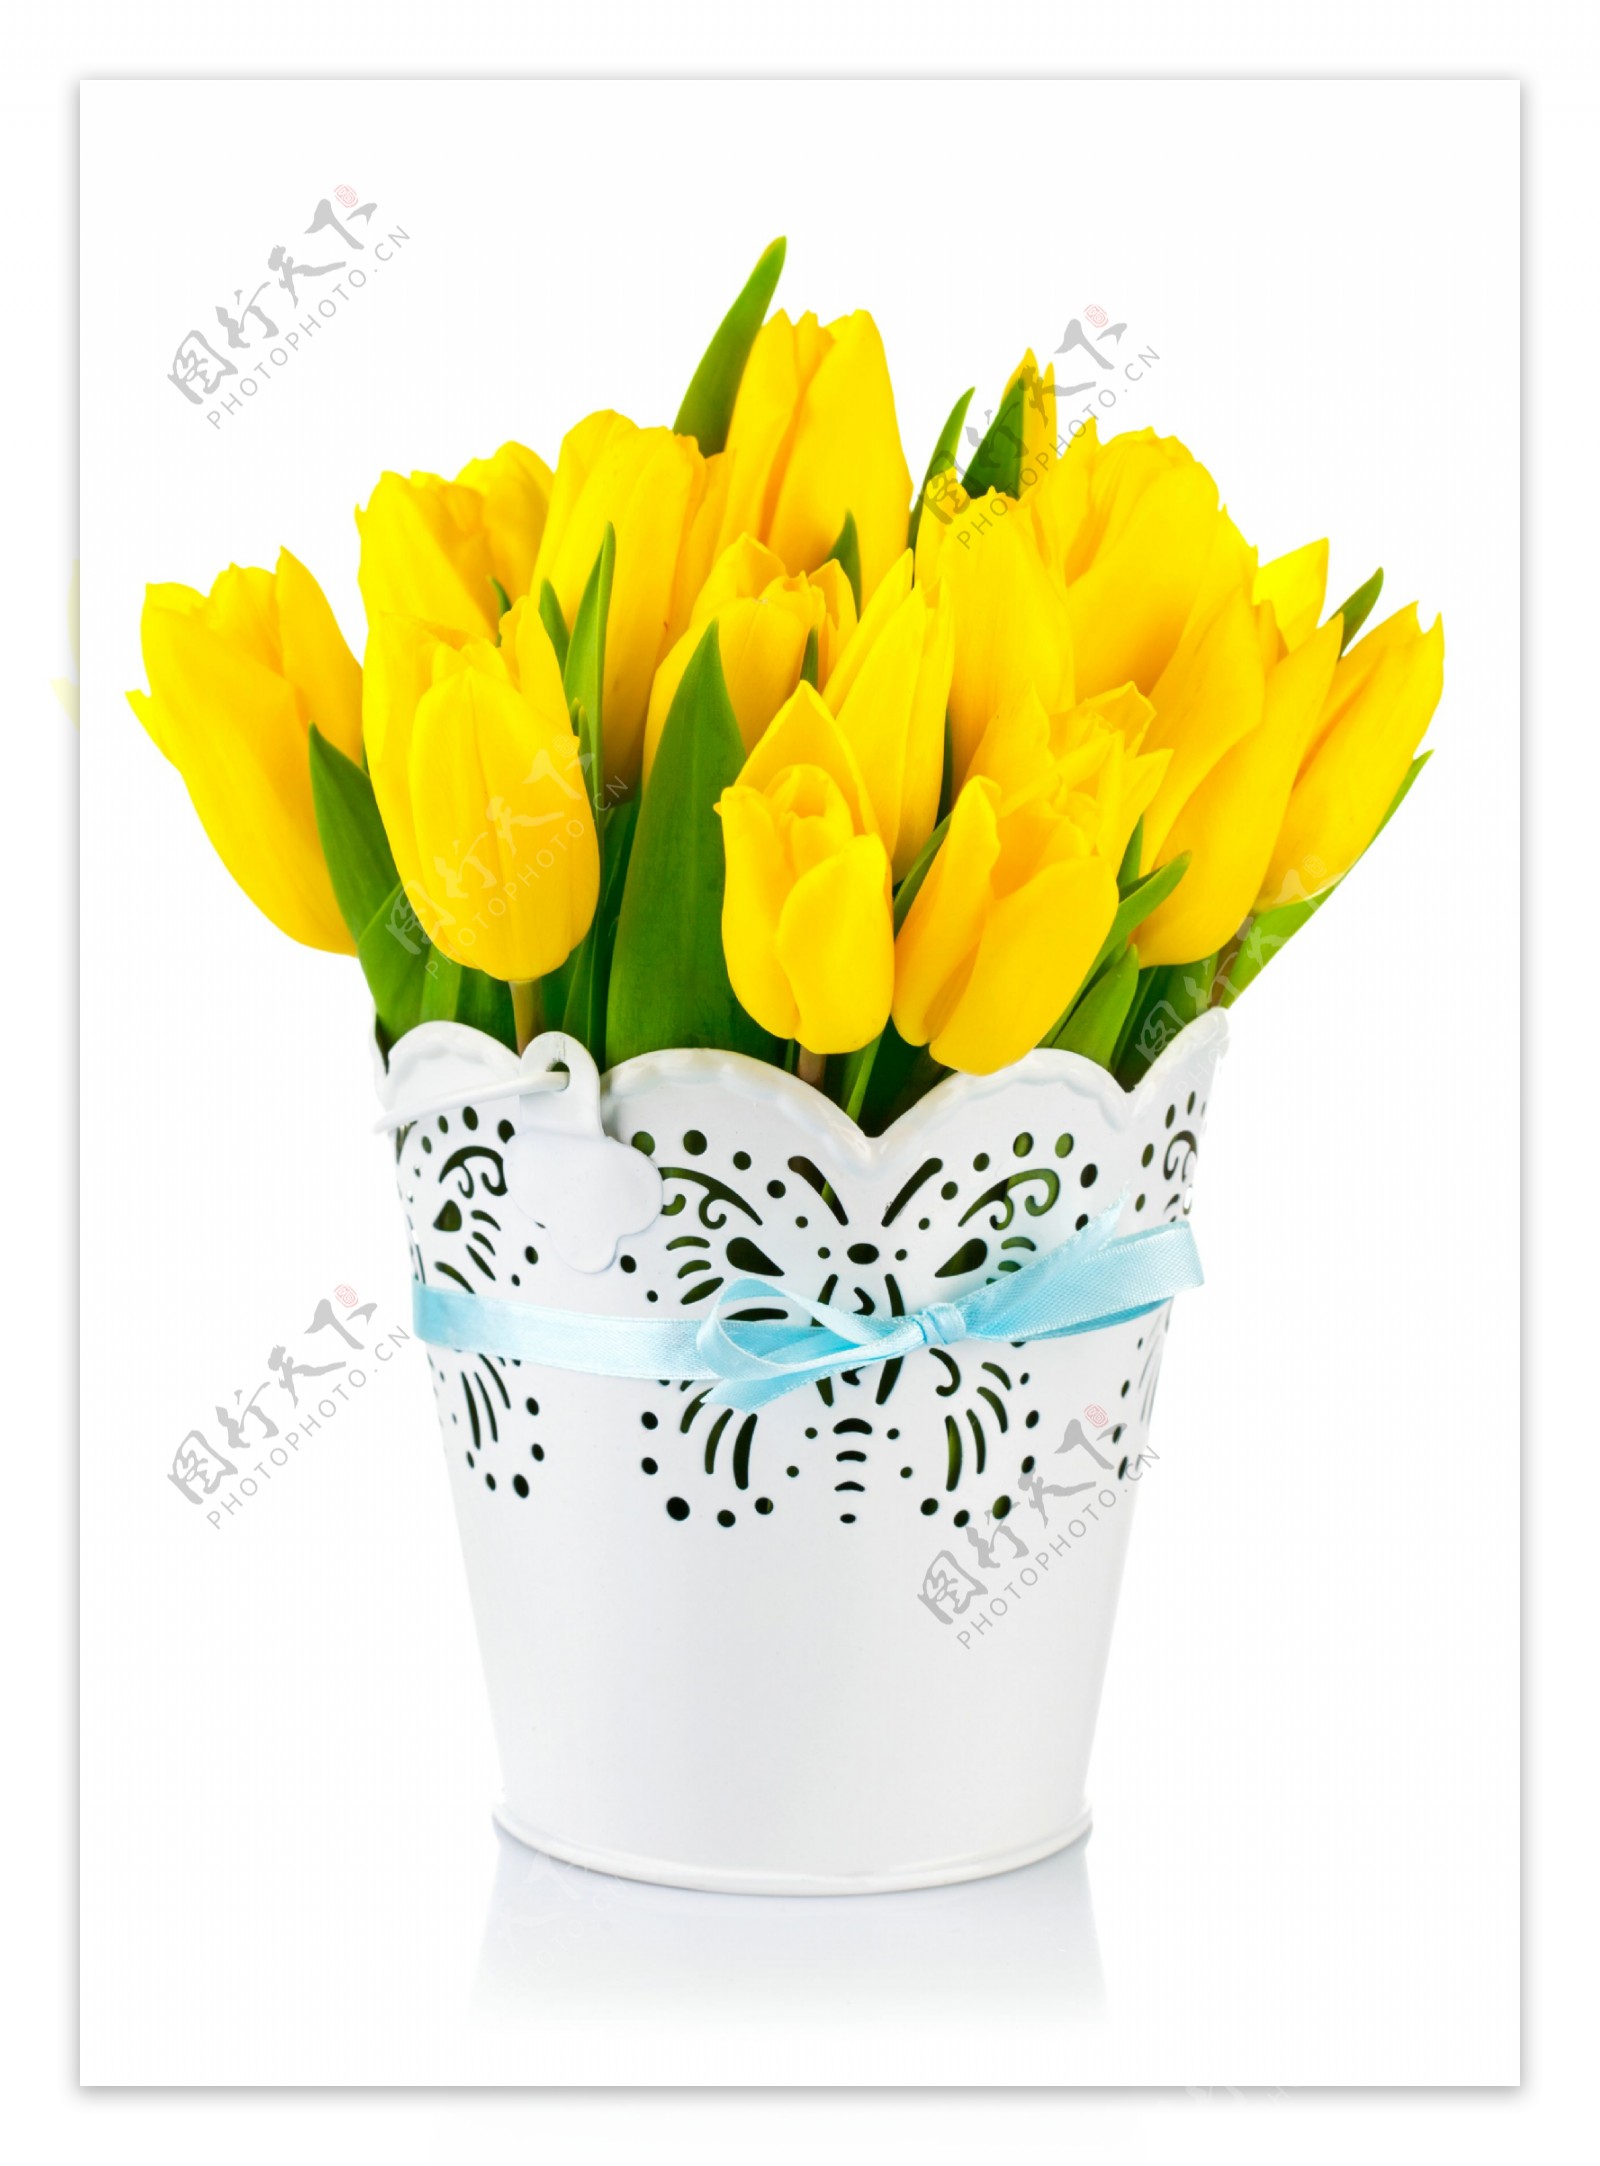 花瓶里的黄色郁金香图片